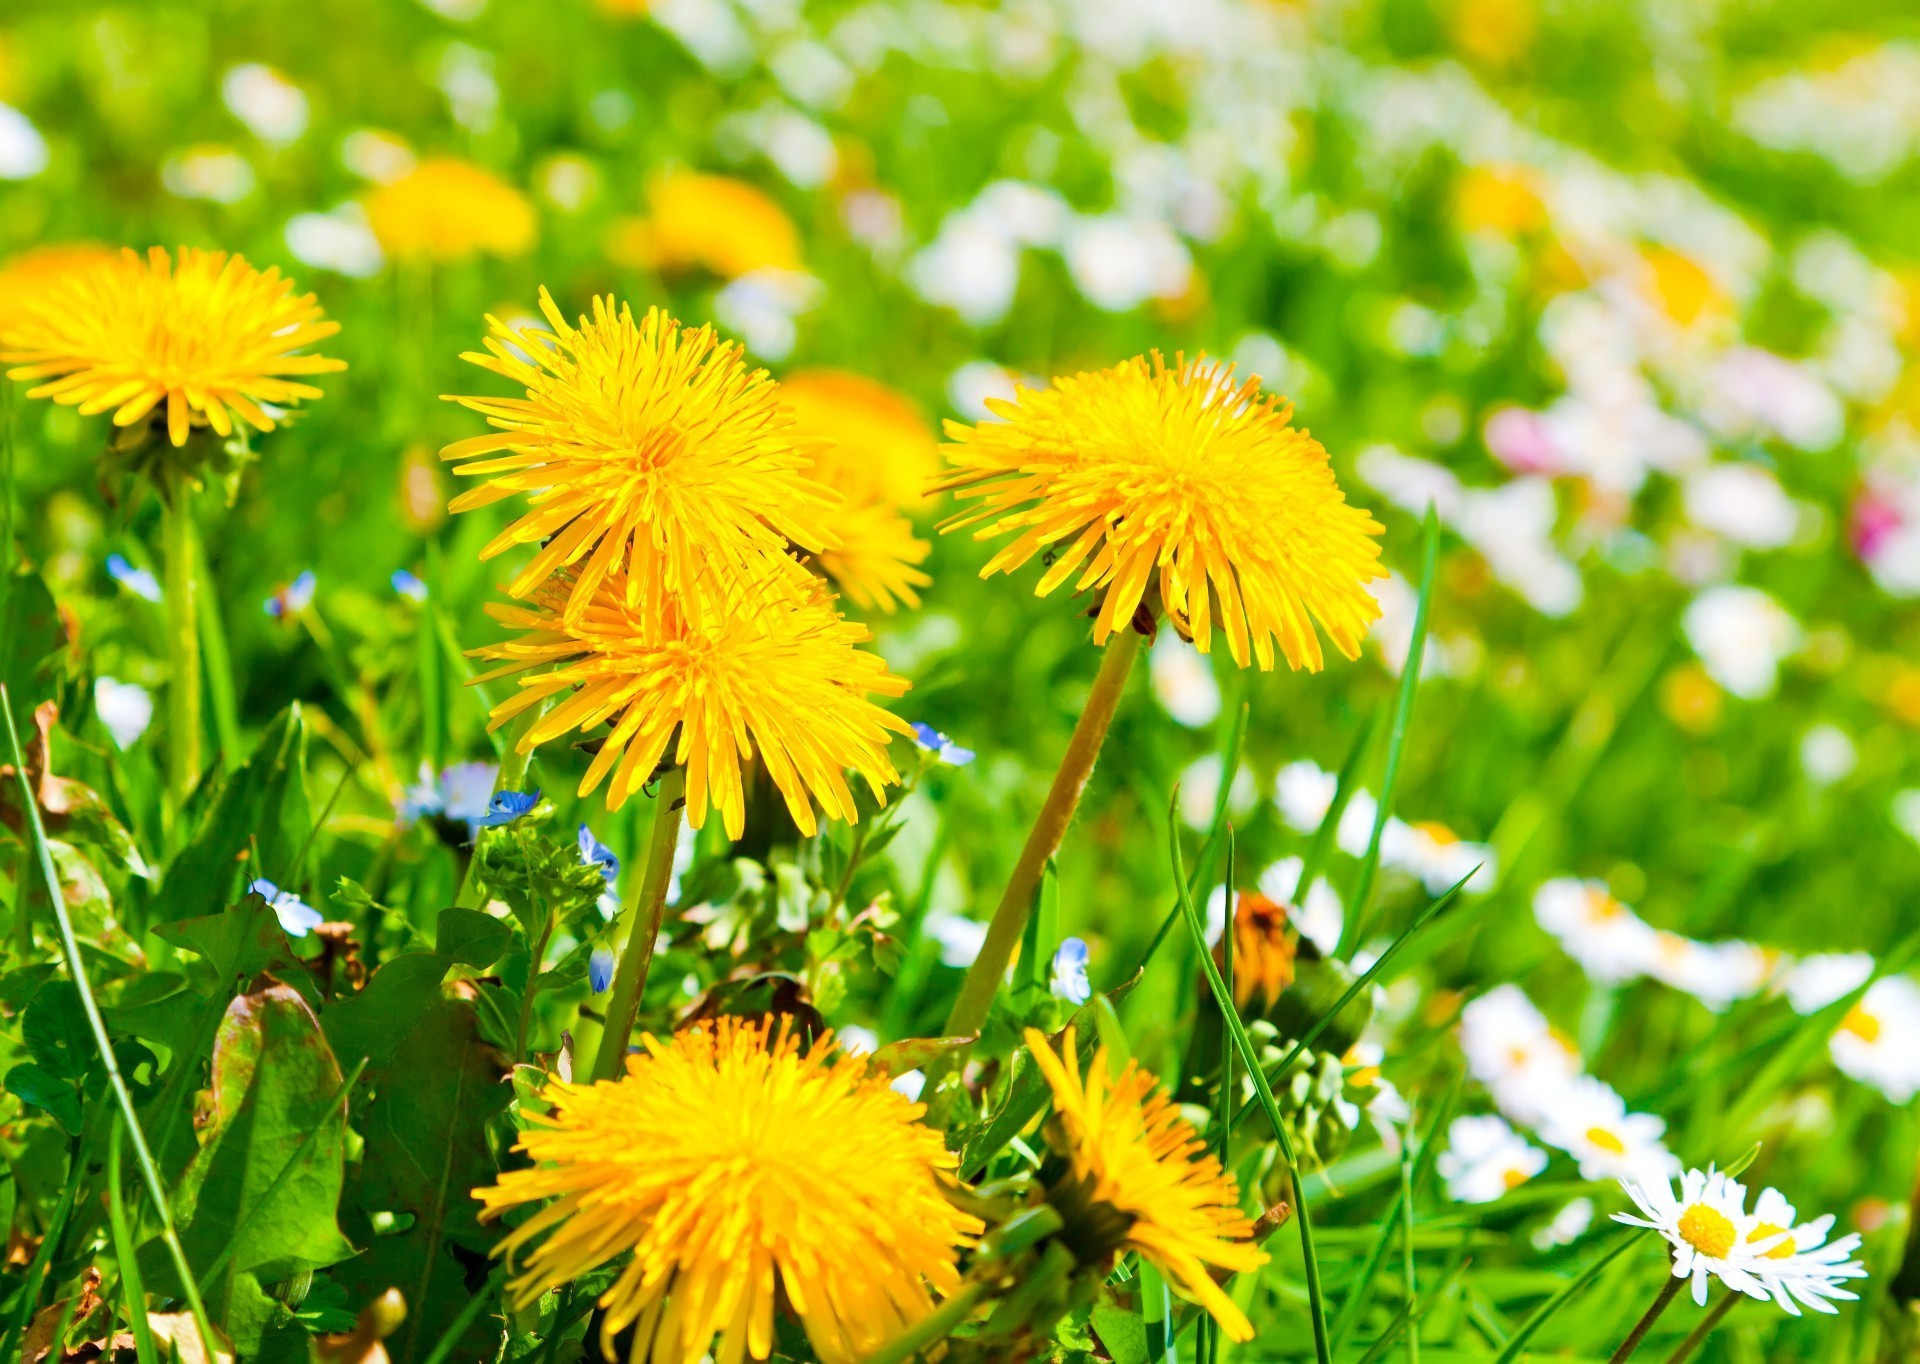 полевые цветы одуванчик лето природа цветок трава флора сенокос поле лист хорошую погоду на открытом воздухе рост солнце сад сельских яркий газон среды цветочные